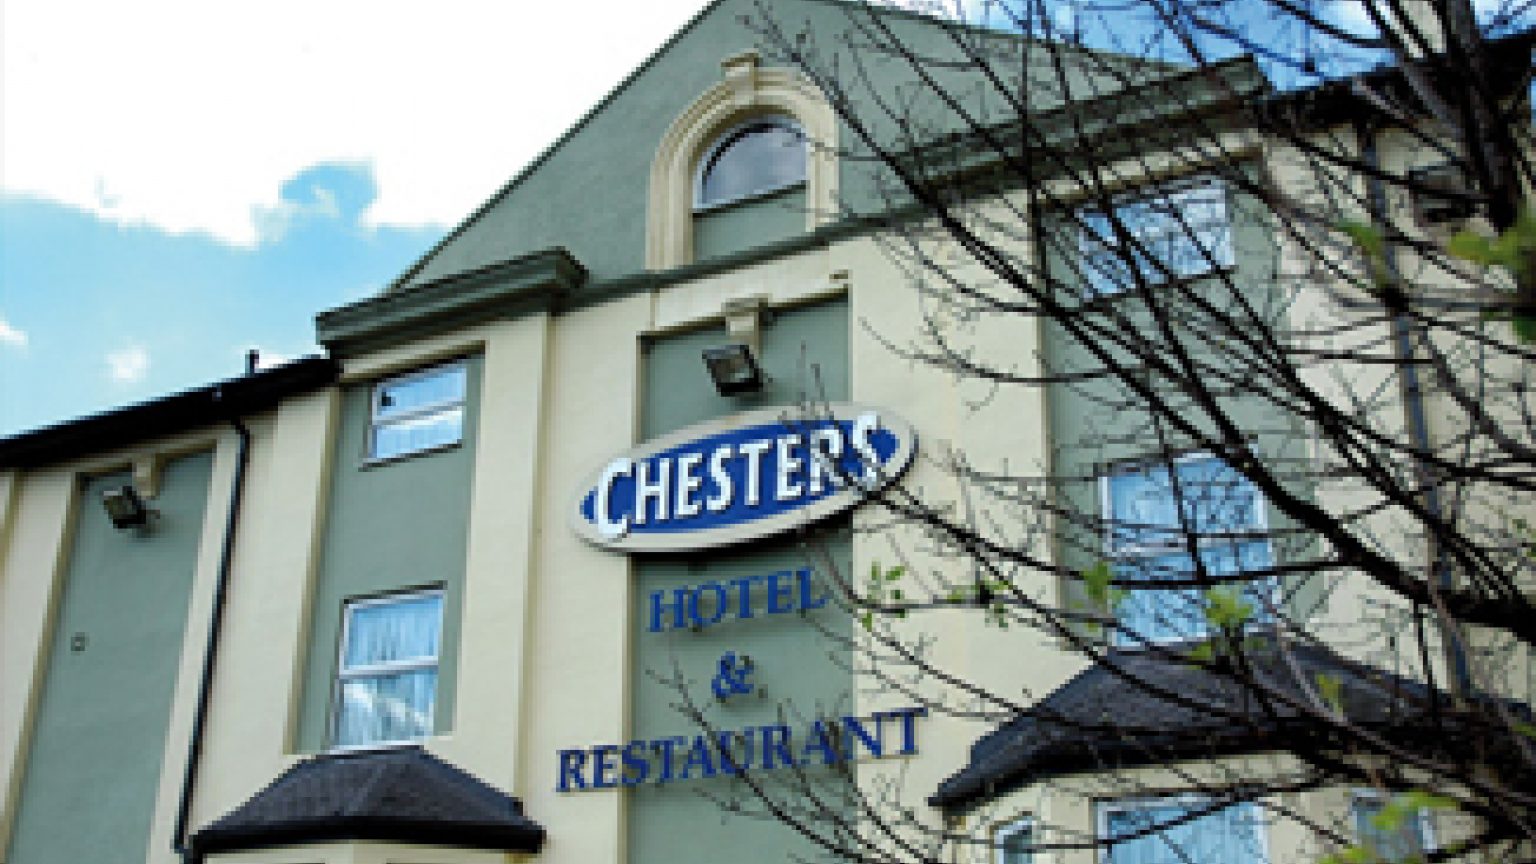 Chester's Hotel & Restaurant